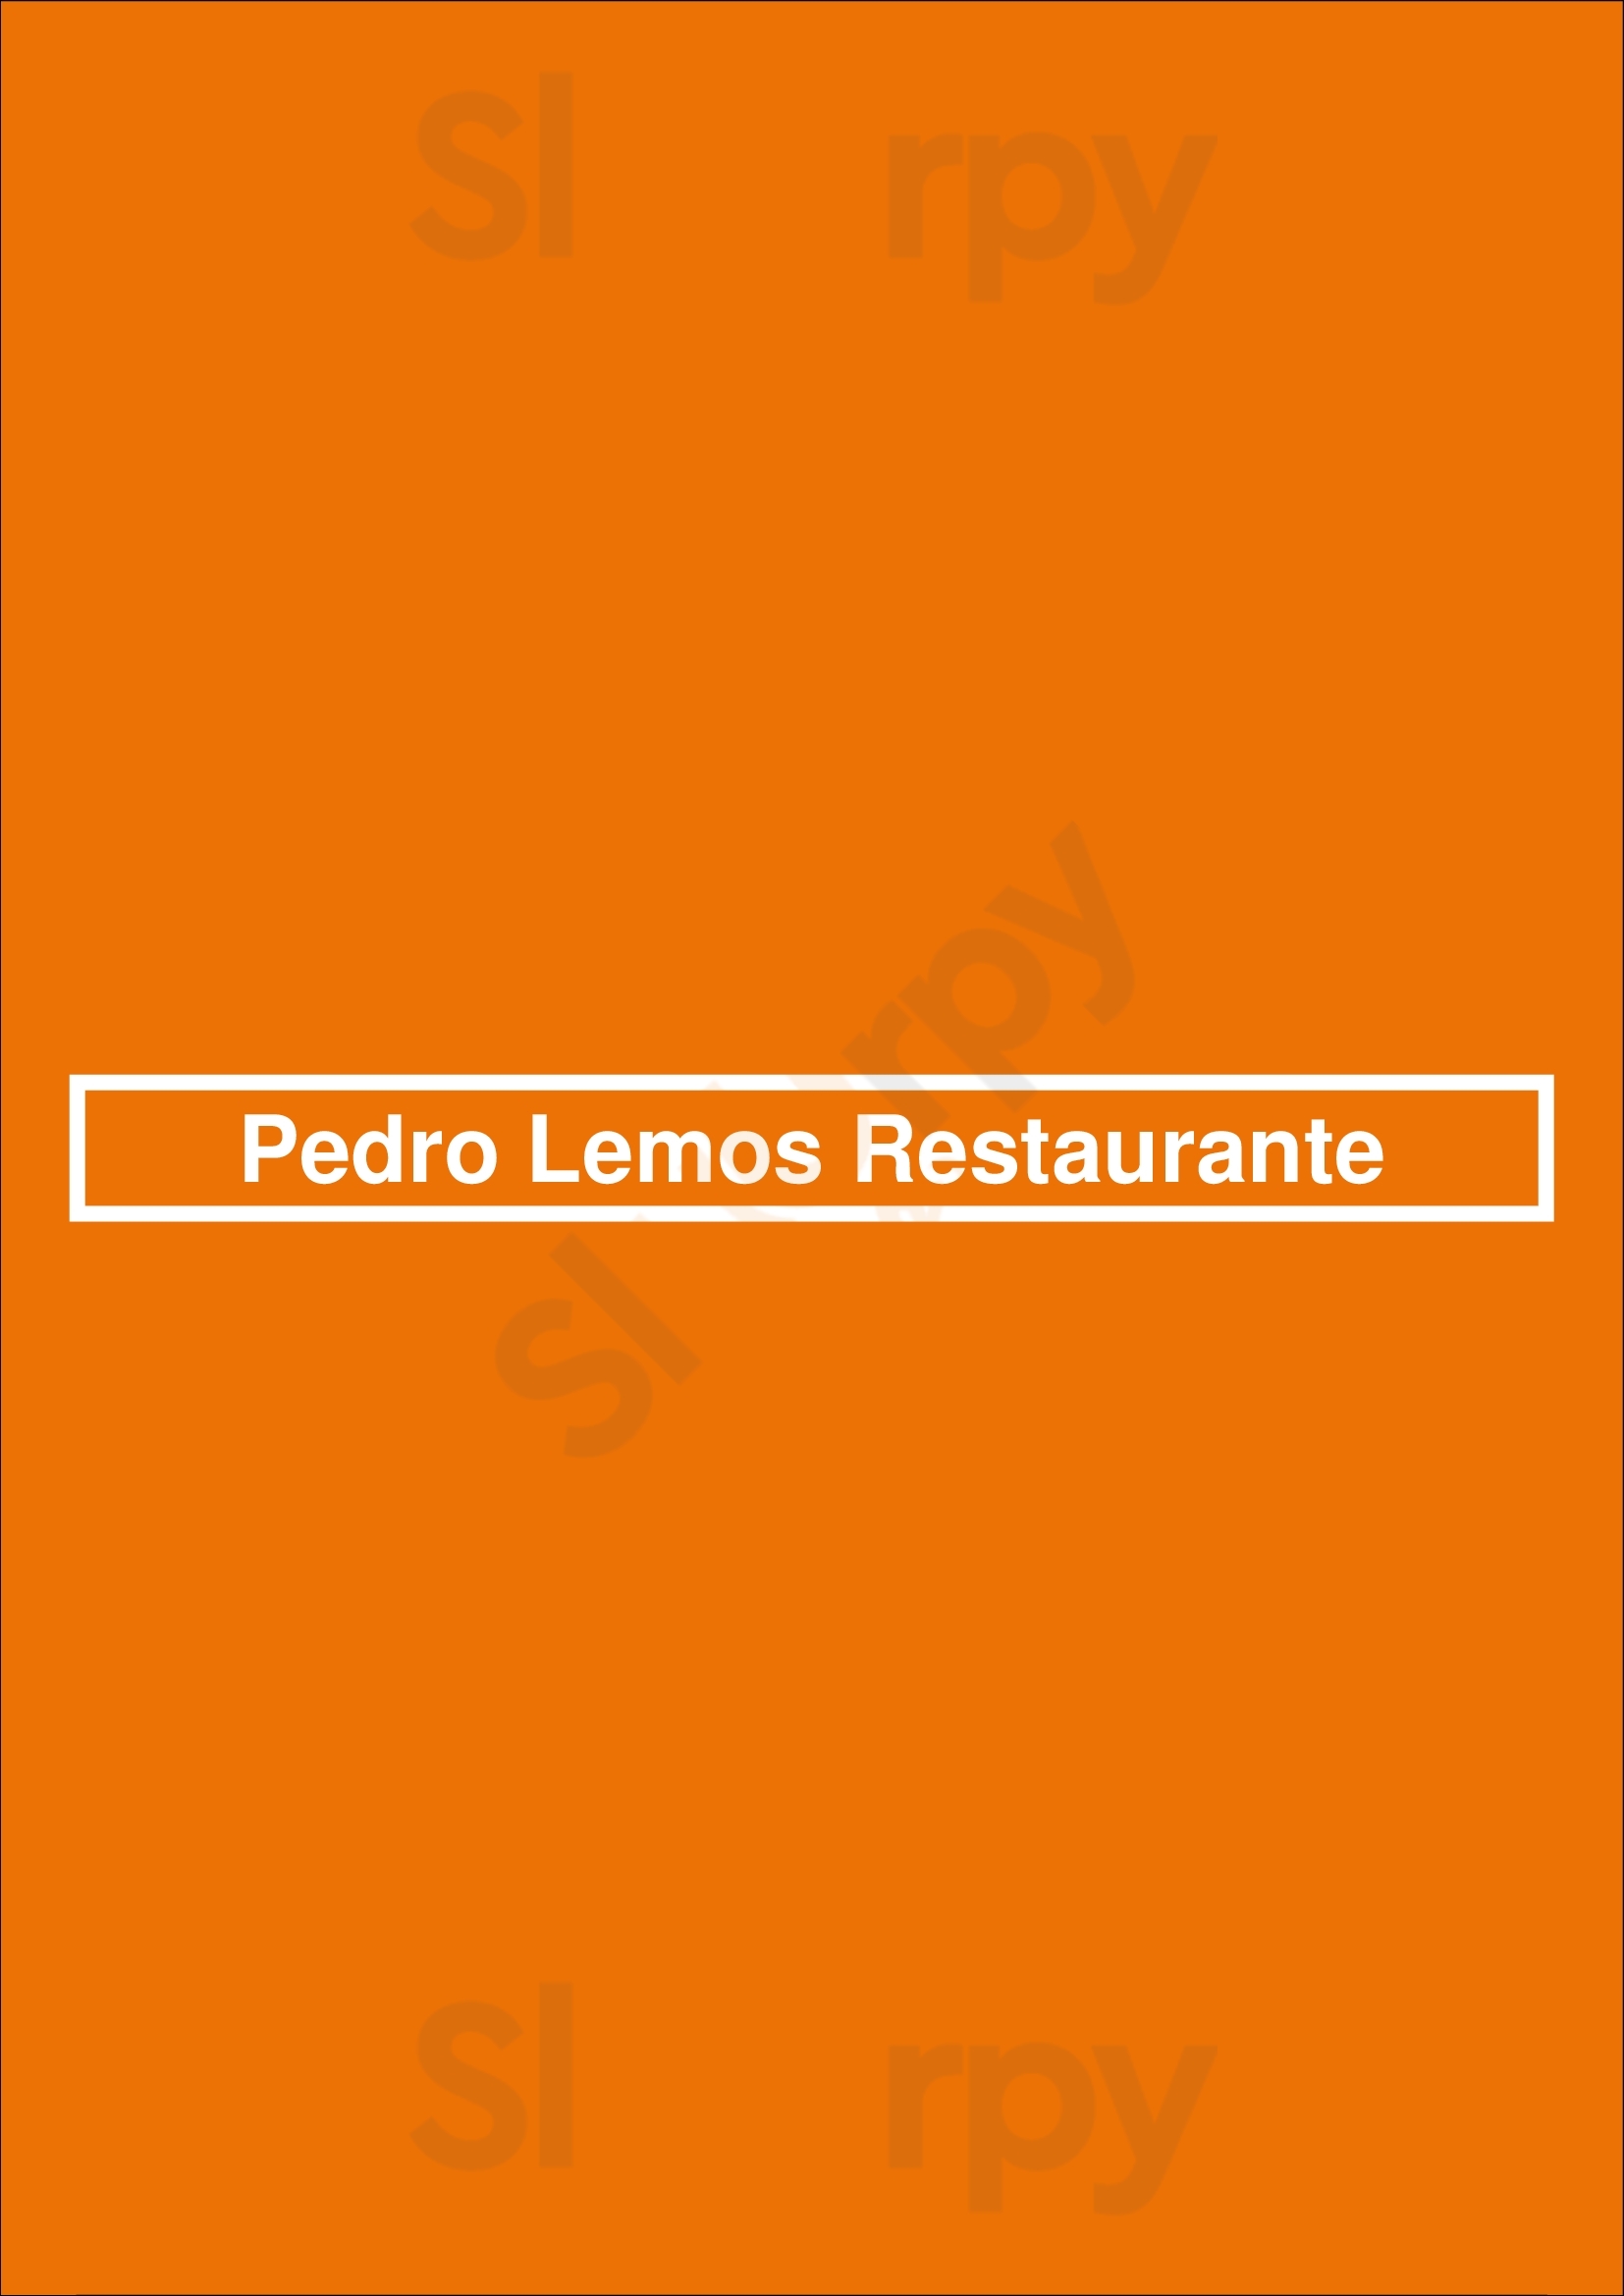 Pedro Lemos Restaurante Porto Menu - 1